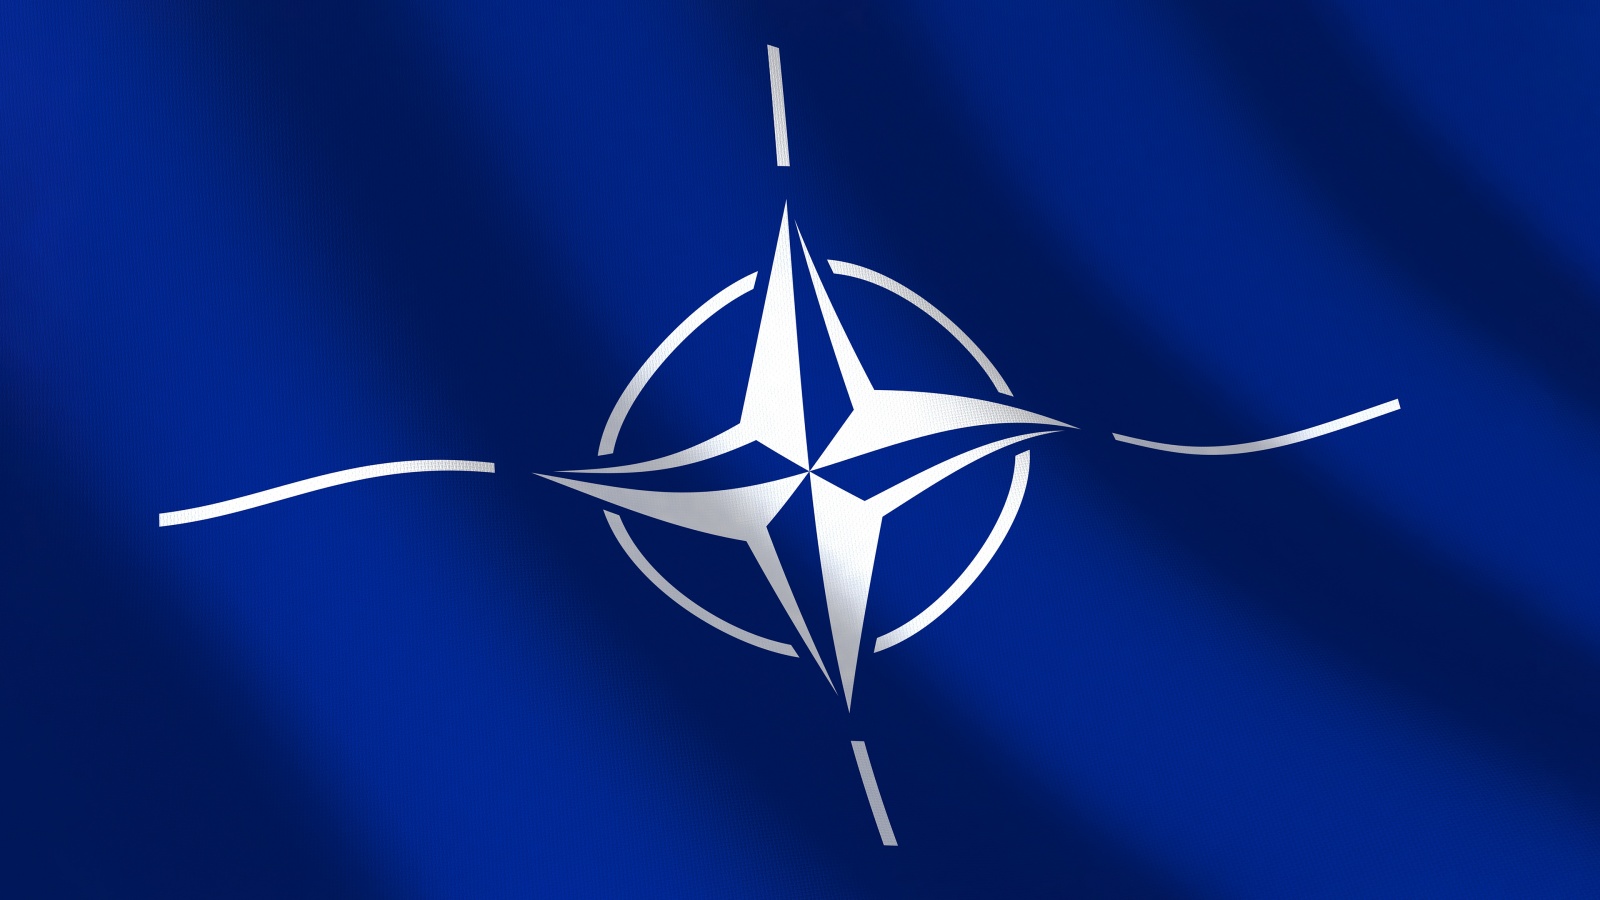 NATO startet Operation Sea Guardian Mittelmeer neu